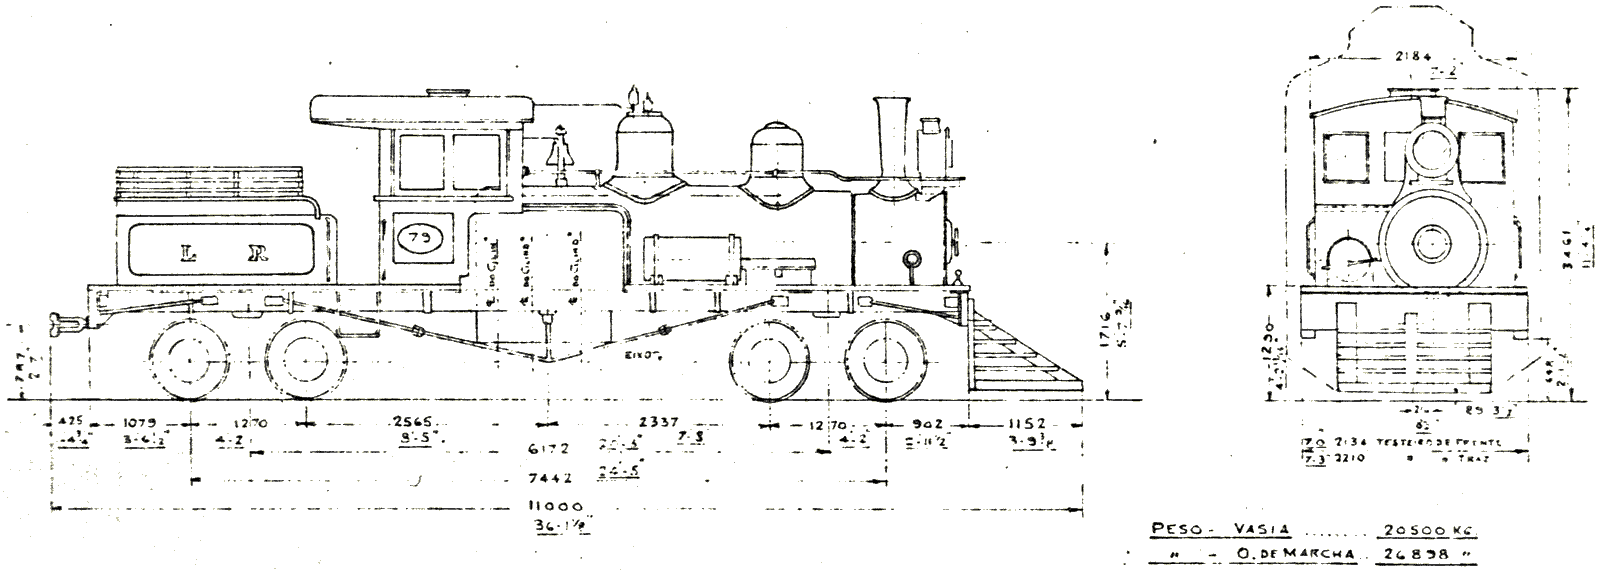 Desenho e medidas da locomotiva Shay número 79 da Leopoldina Railway